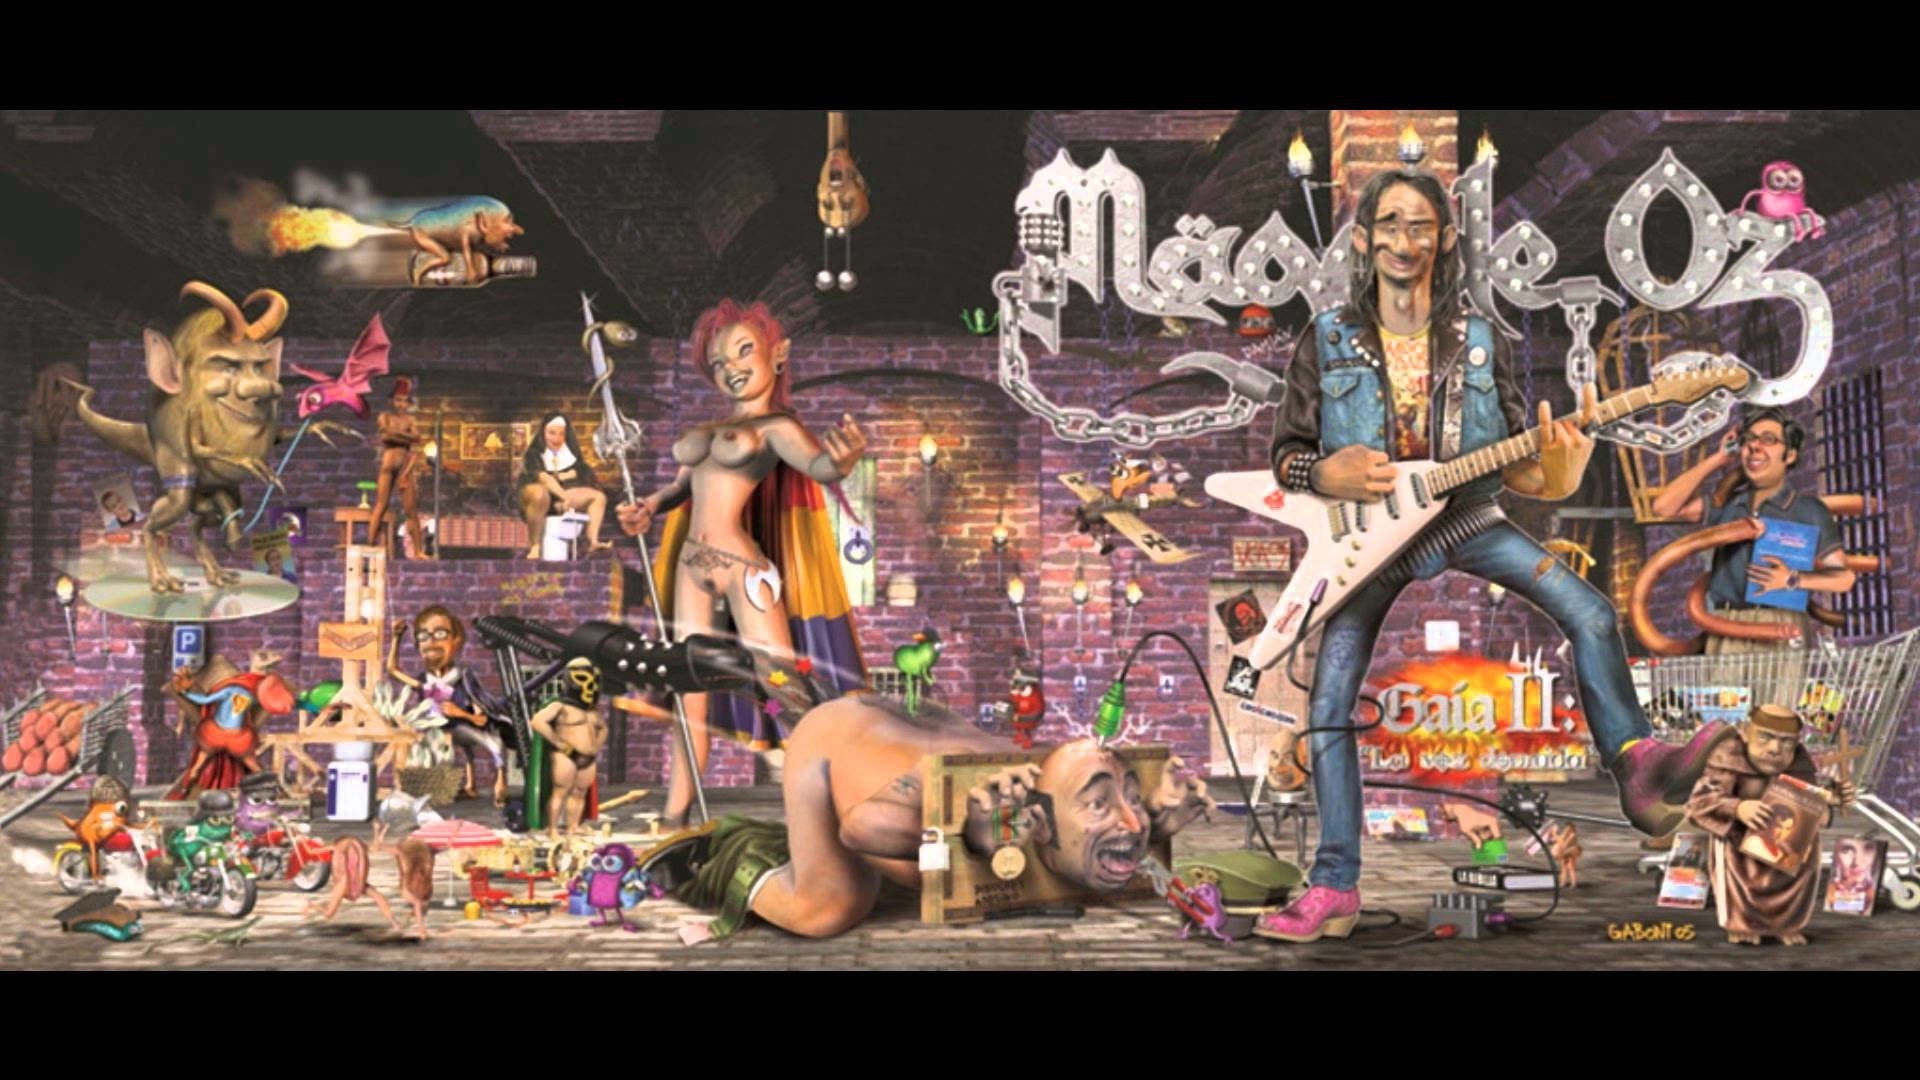 Mago De Oz - Mago De Oz Gaia 2 , HD Wallpaper & Backgrounds